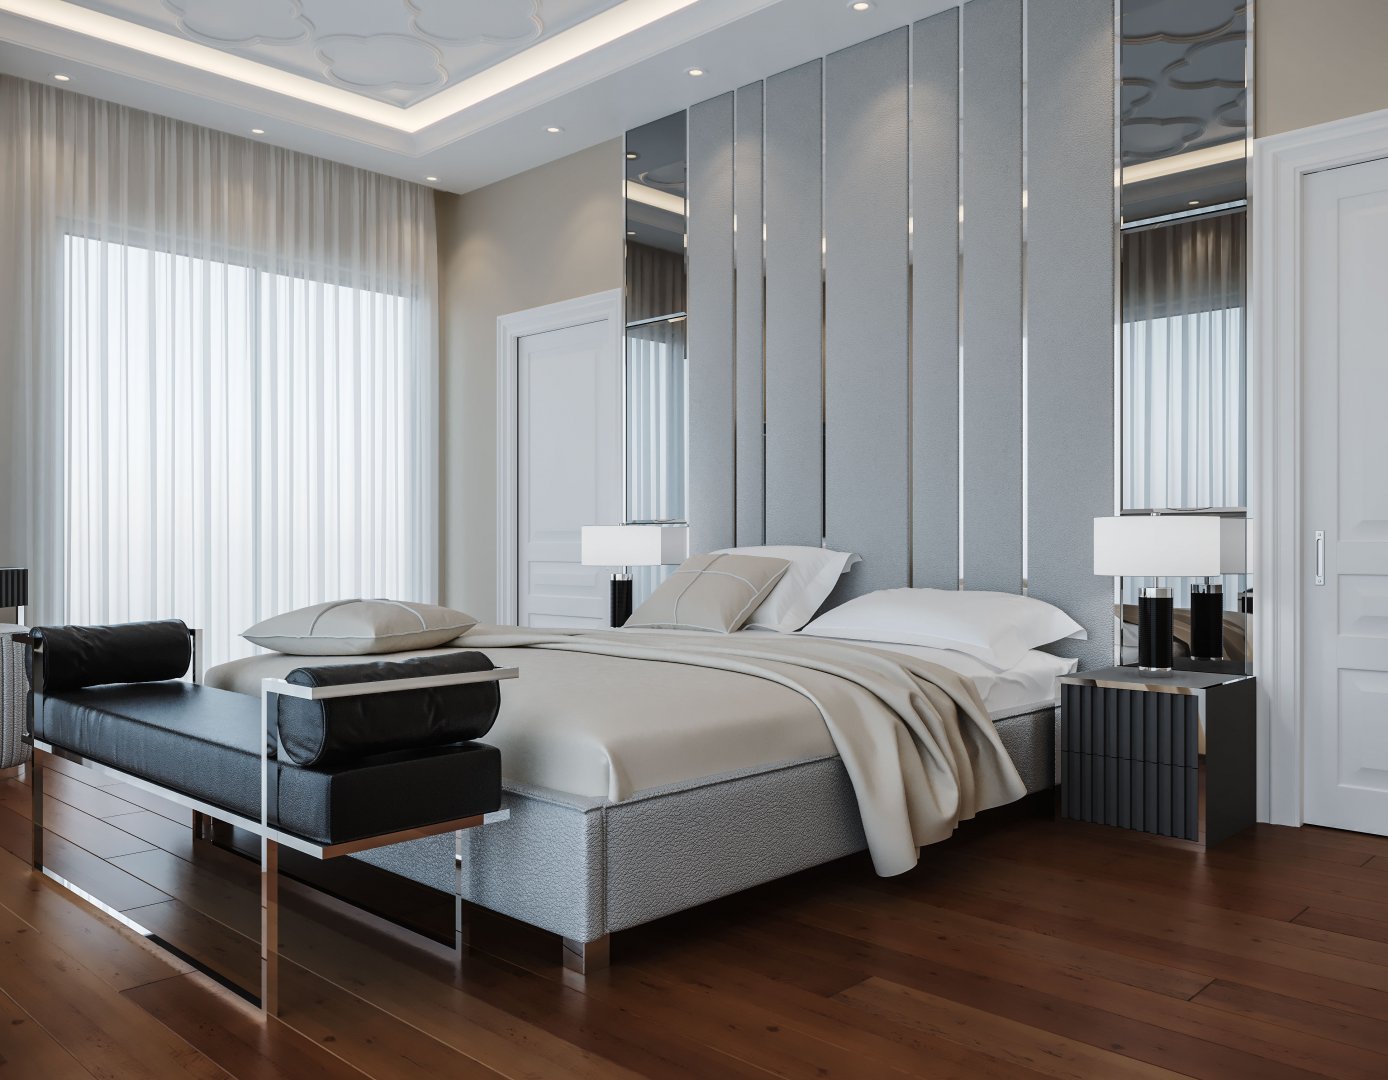 Özel Yatak Odası Projesi - Masko | Elano Luxury Furniture - Masko - Modoko